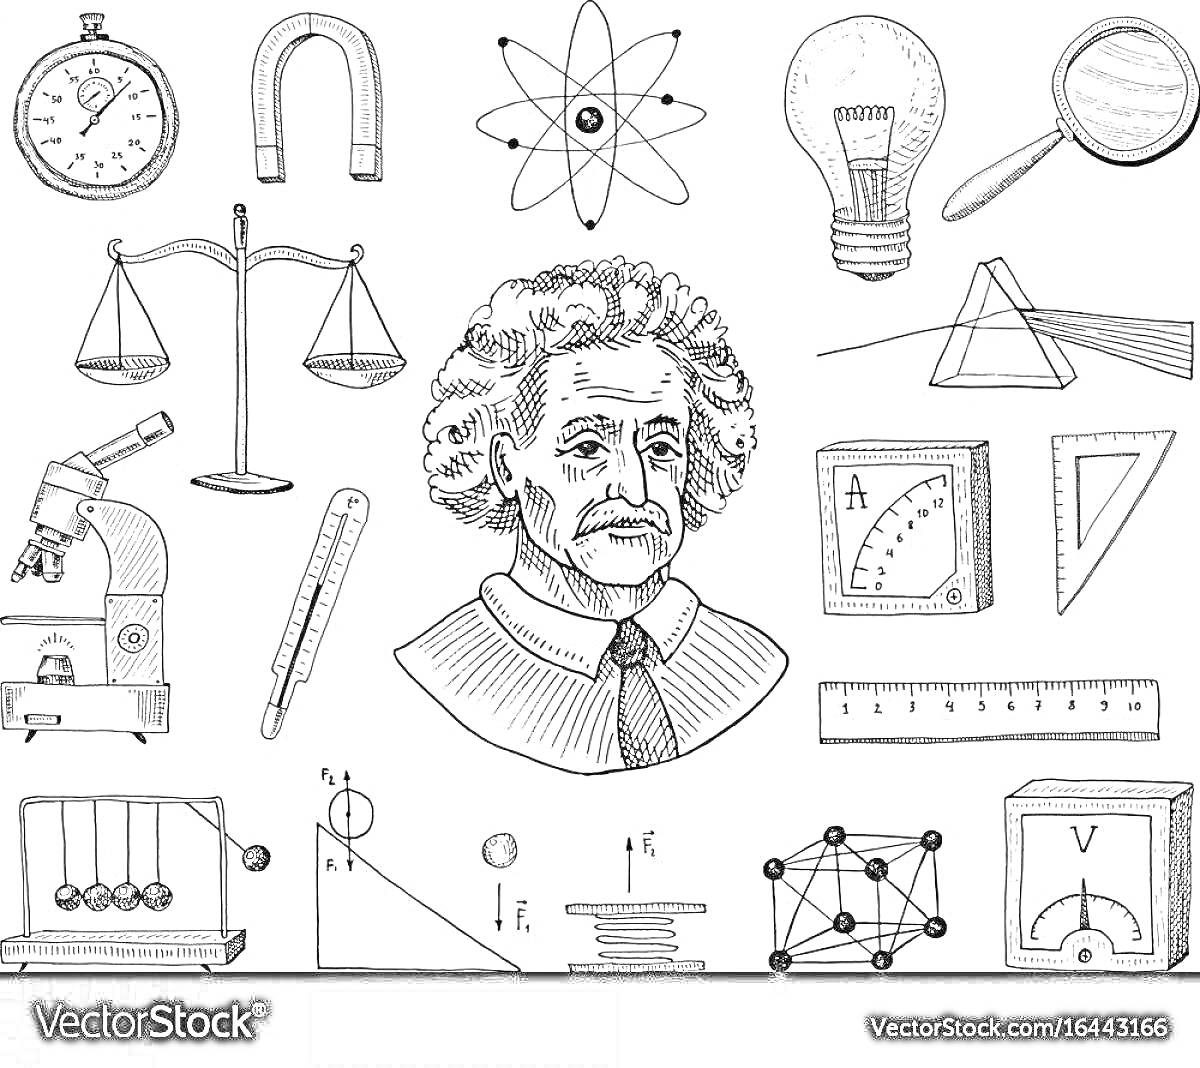 Разнообразные элементы физики: секундомер, подкова-магнит, атом, лампочка, увеличительное стекло, весы, микроскоп, термометр, портрет учёного, амперметр, треугольник, линейка, маятник Ньютона, формулы, схематичное изображение прямоугольного параллелепипед